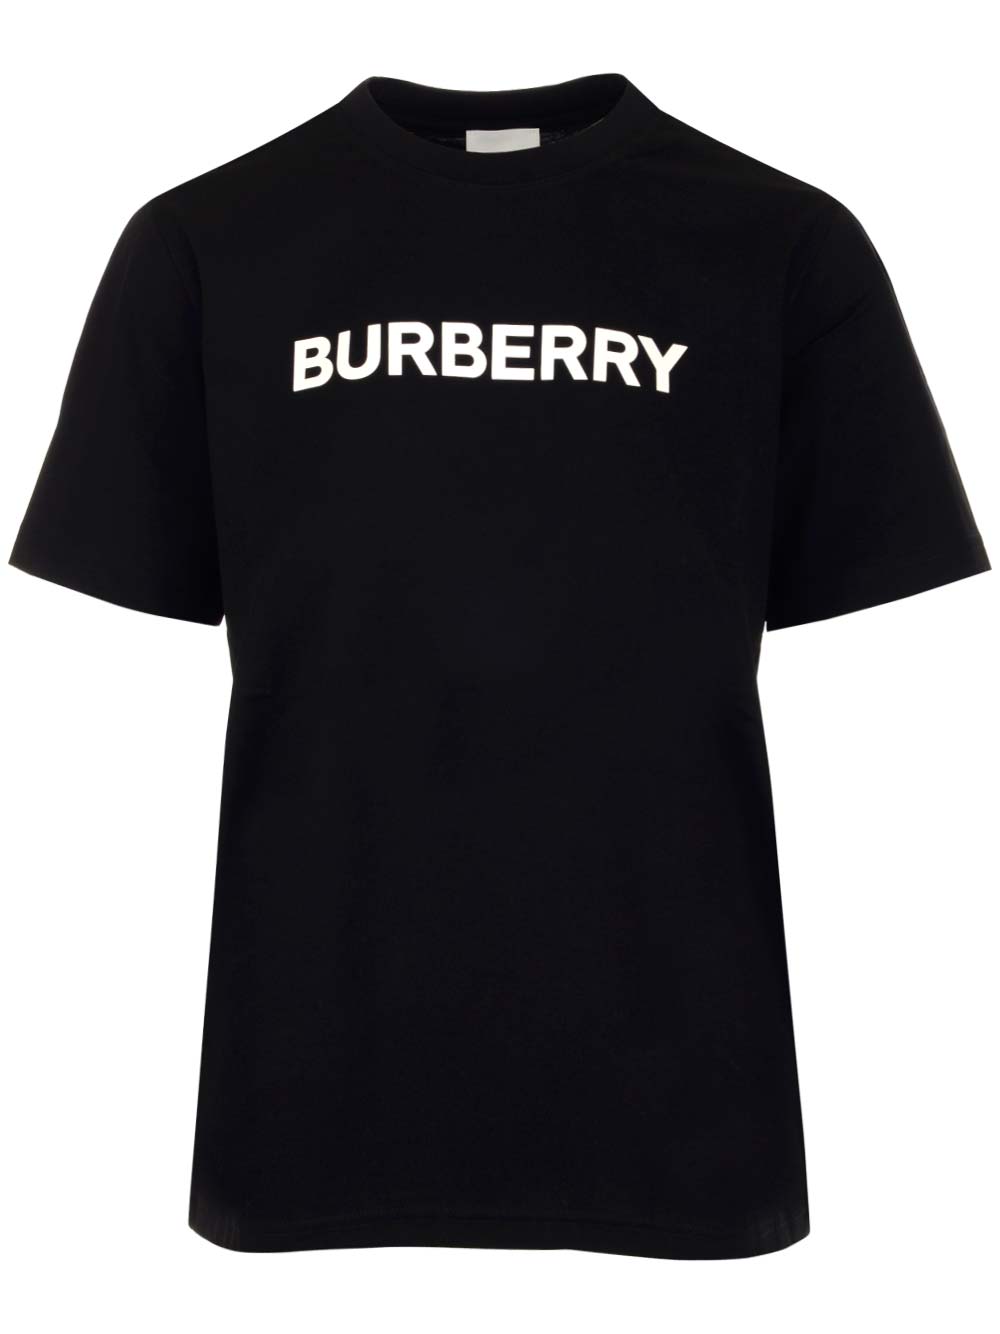 Burberry margot T-shirt